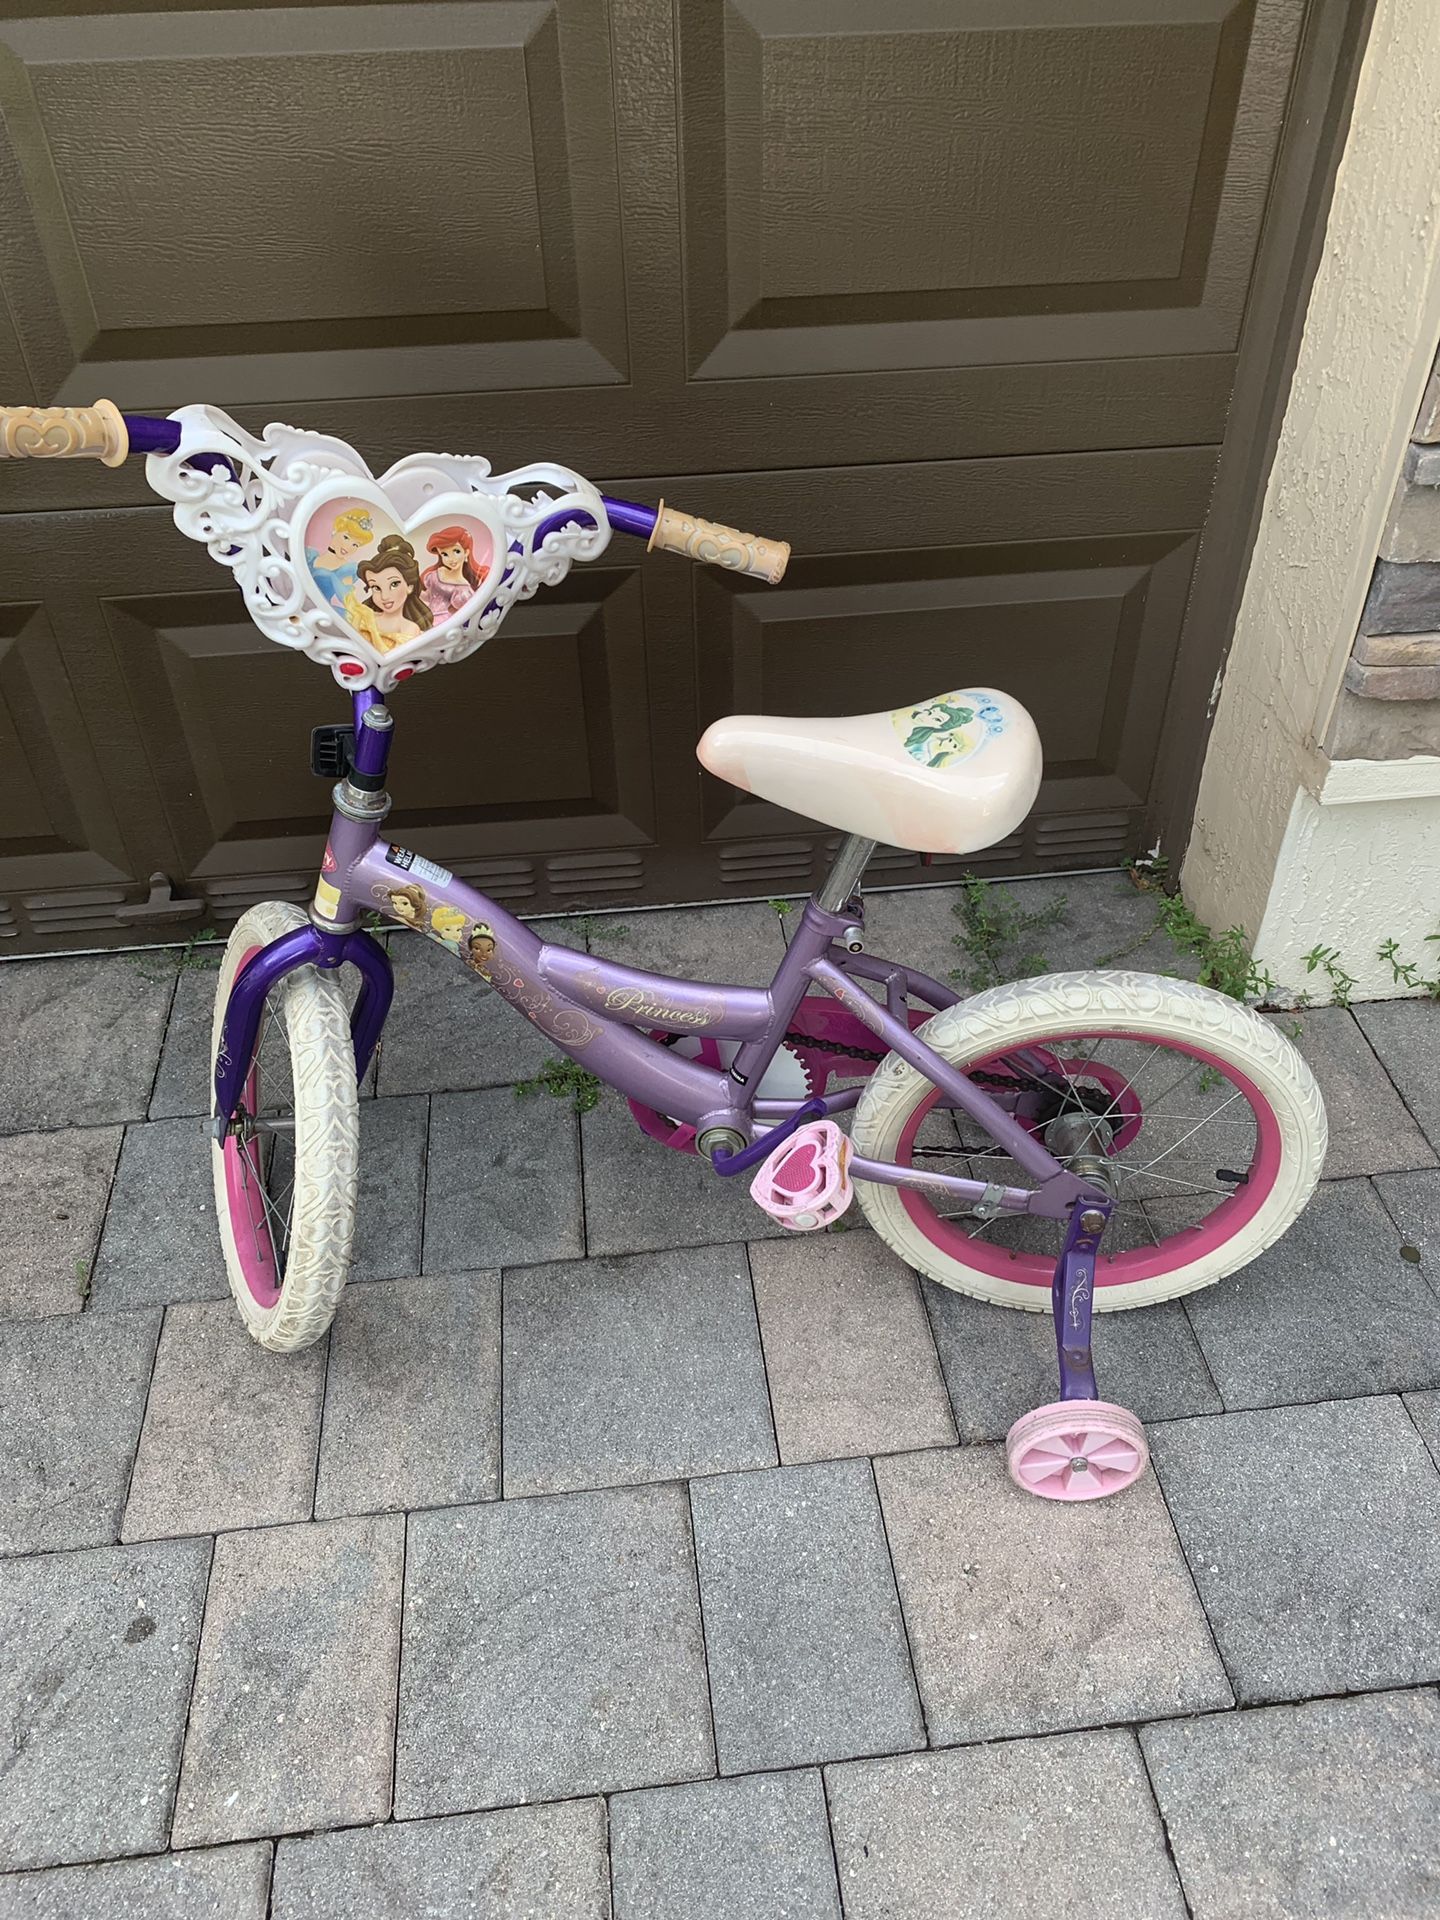 Princess bike